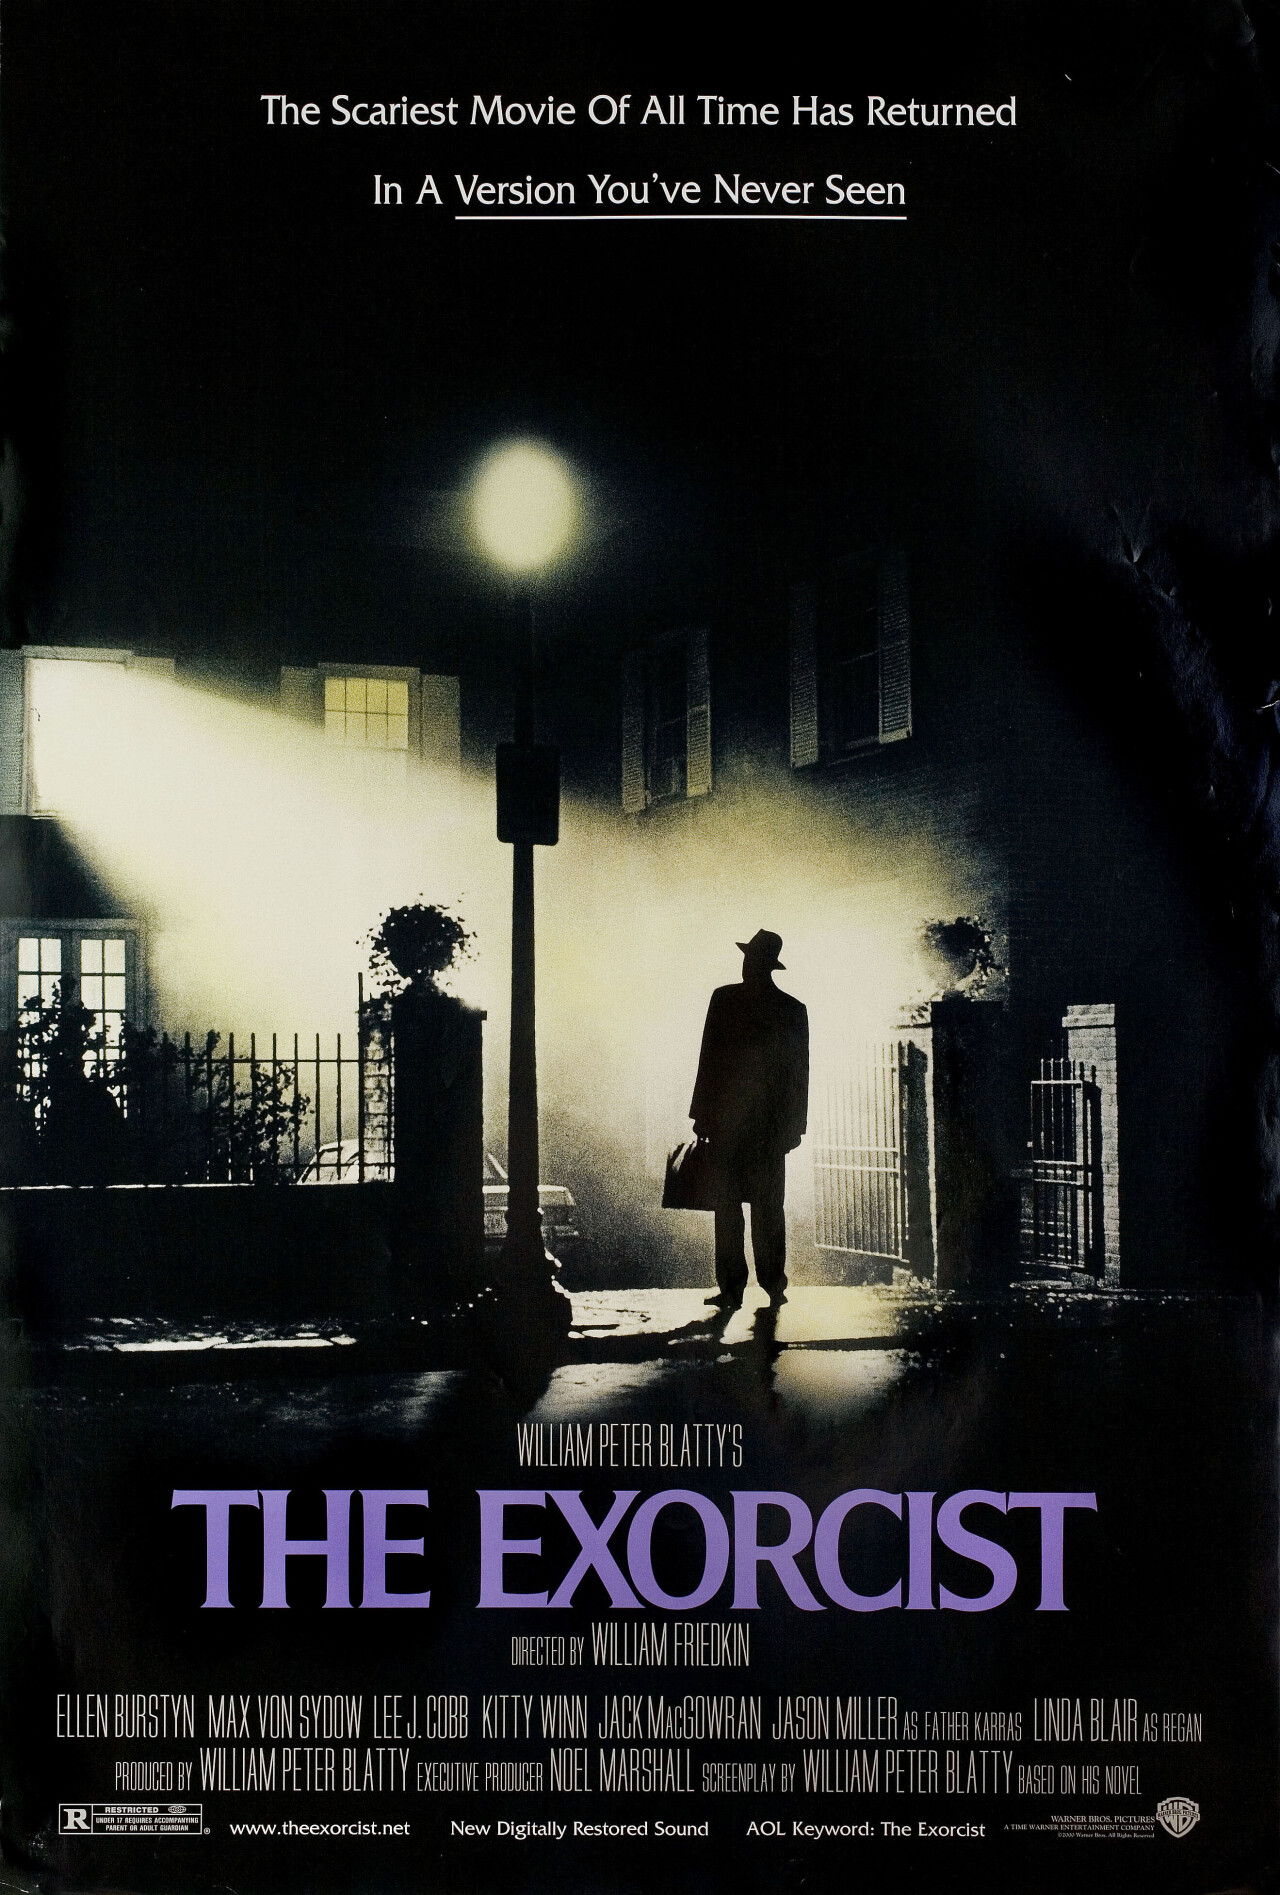 Изгоняющий дьявола (The Exorcist, 1973), режиссёр Уильям Фридкин, американский постер к фильму (ужасы, 2000 год)